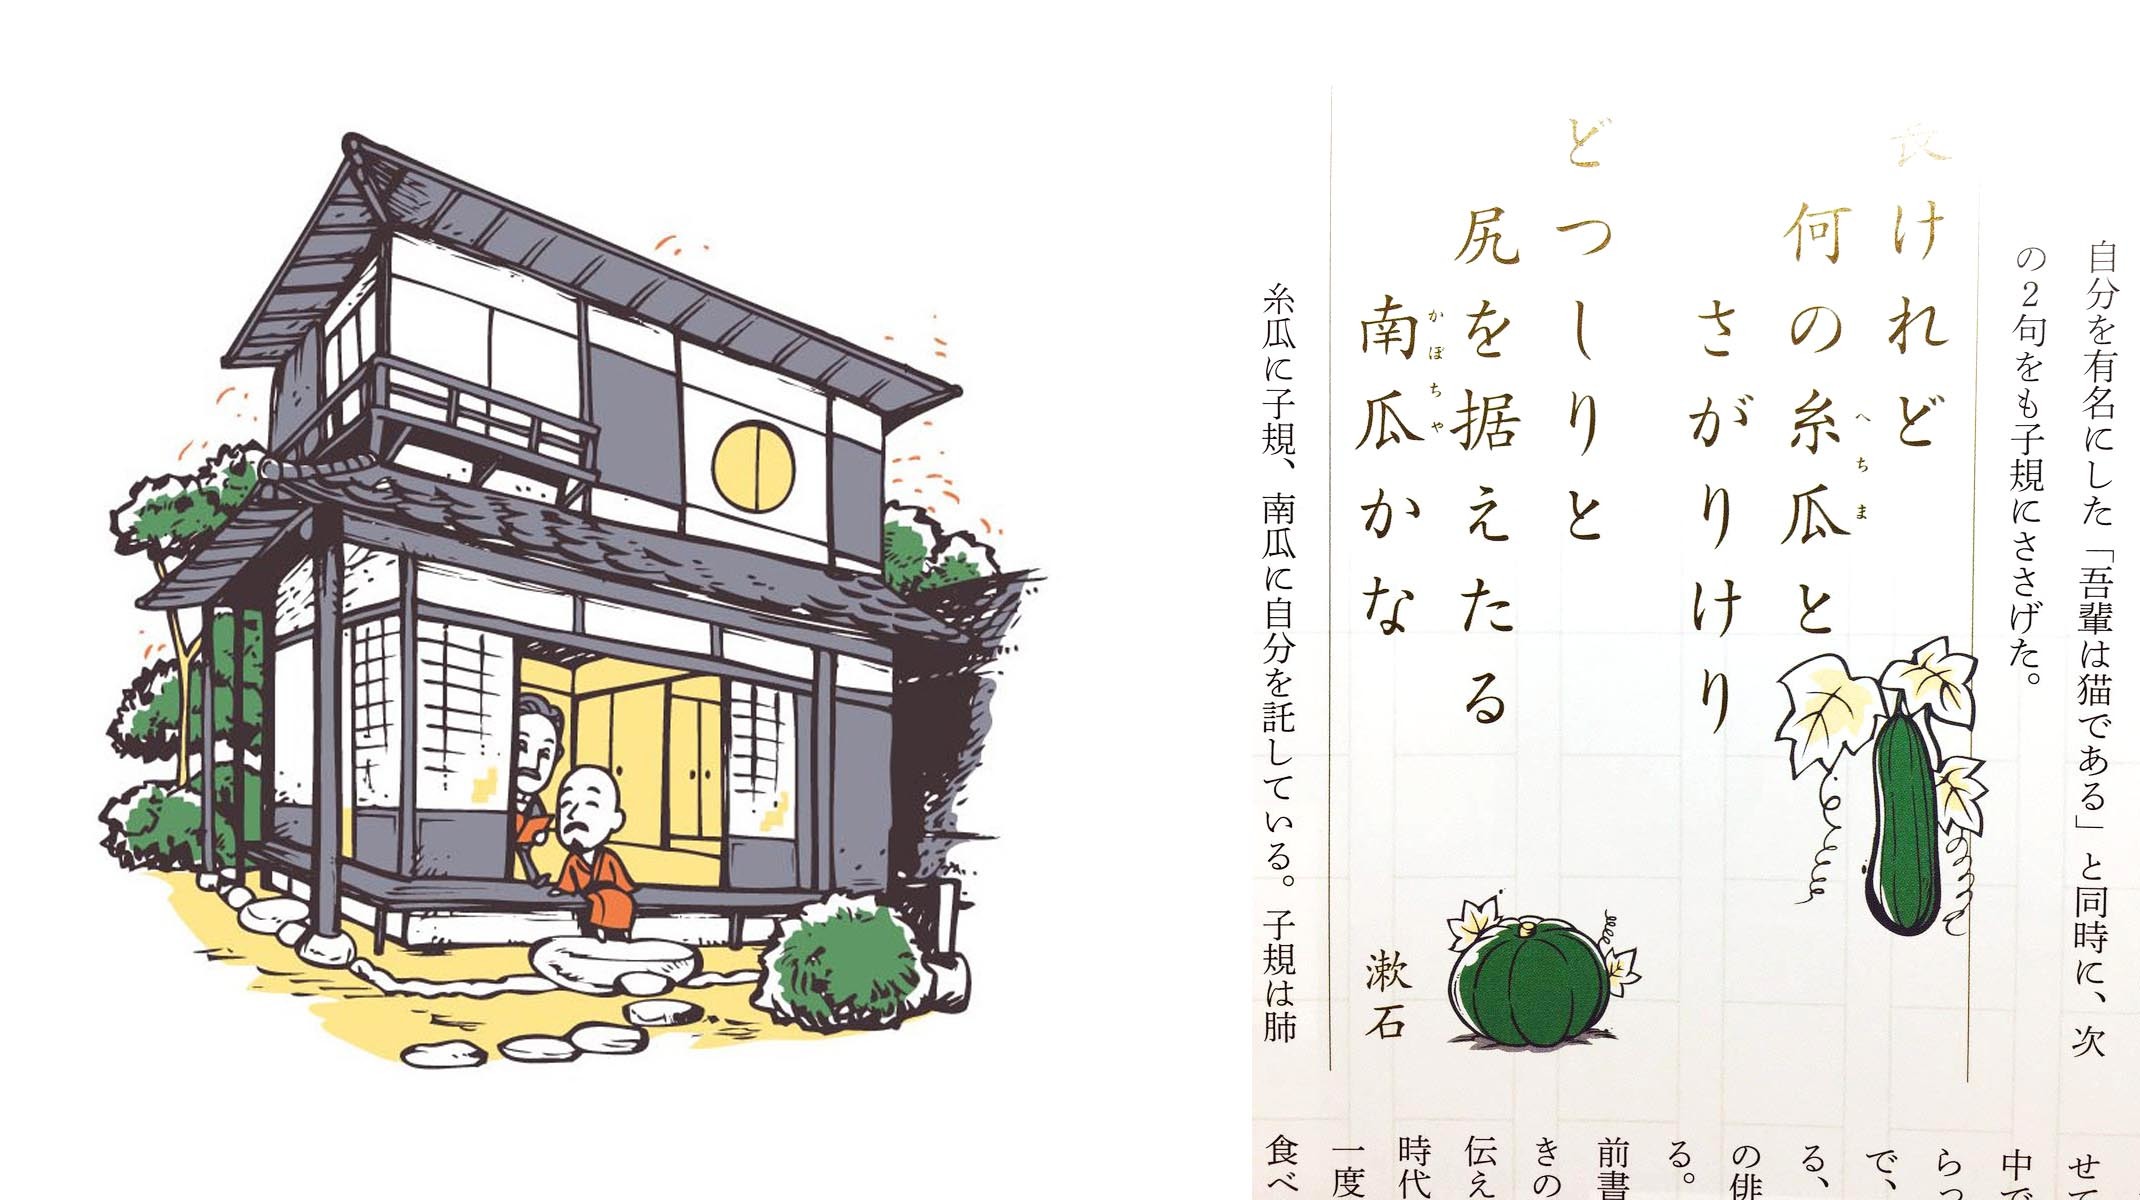 ノジュール 17年10月号 にて 夏目漱石 と 正岡子規と 二人が過ごした愚陀仏庵のイラストを描かせていただきました アイマグブログ イラストレーター デザイナー 似顔絵師 芸術家 佐伯ウサギ